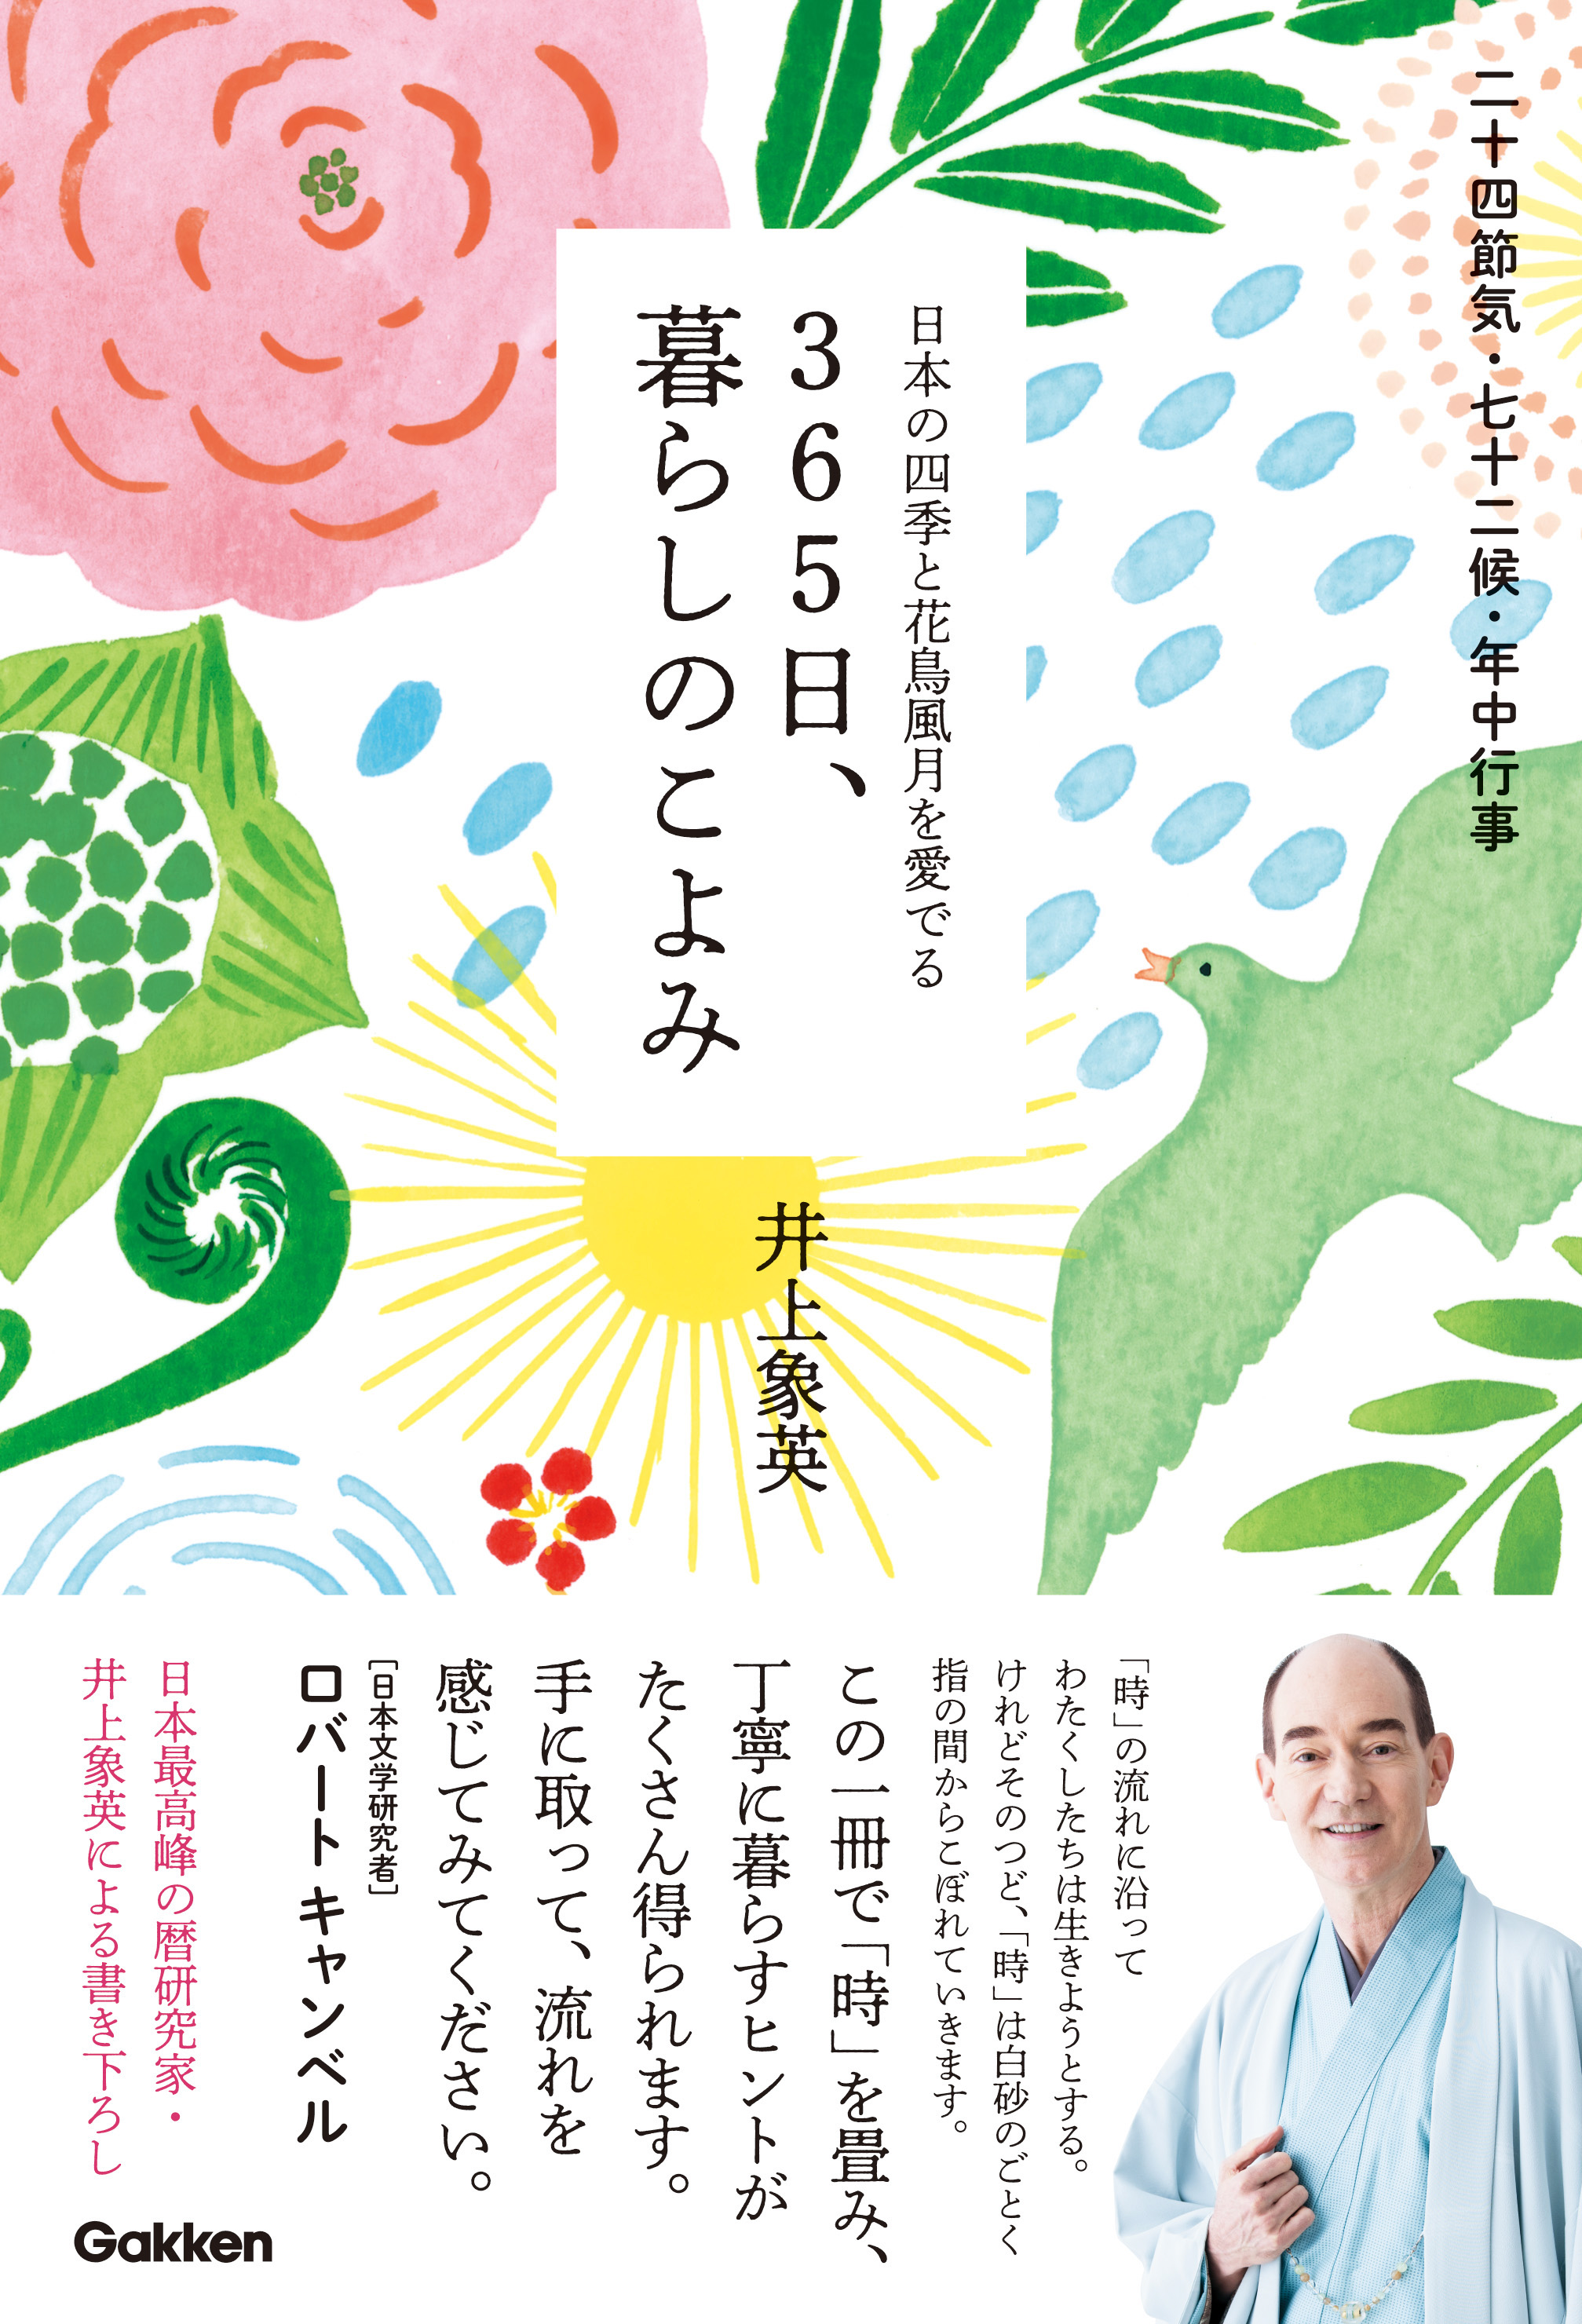 今日は何の日? 七十二候、二十四節気、年中行事など、日本の文化と四季を愛でる本。 | ㈱Gakken公式ブログ